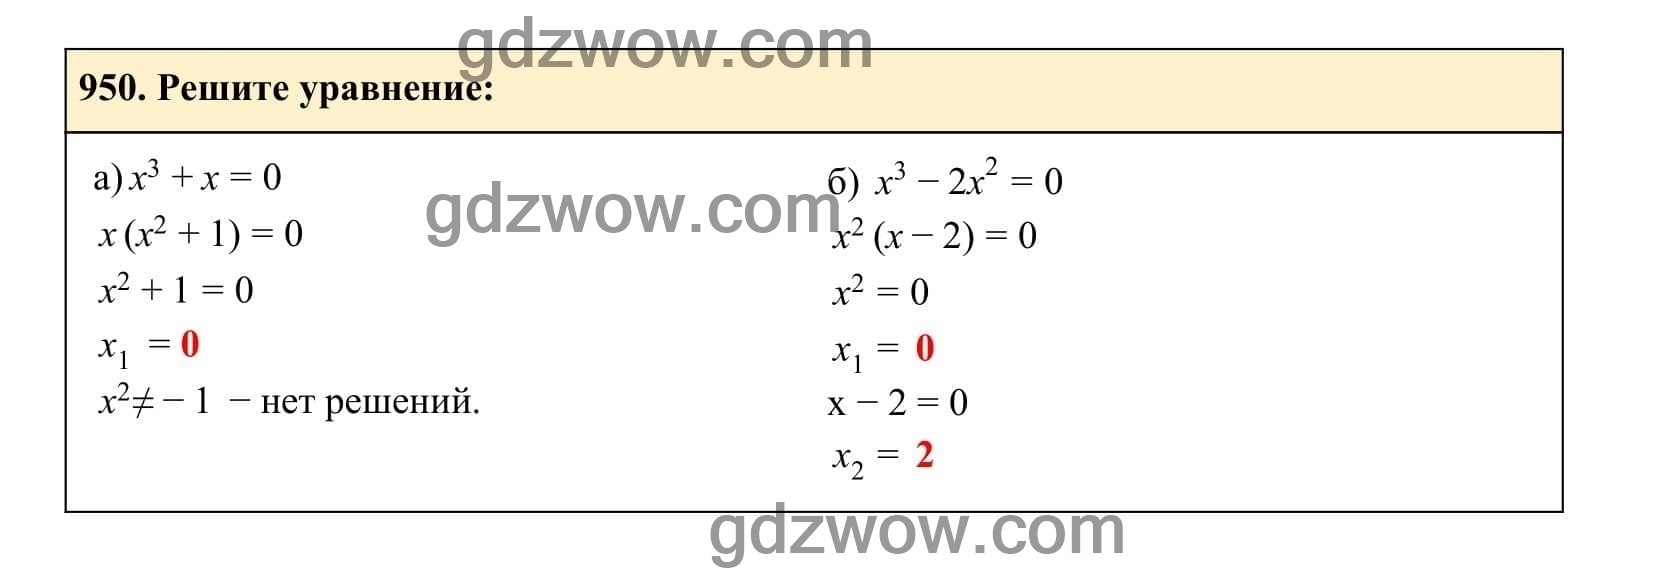 Упражнение 950 - ГДЗ по Алгебре 7 класс Учебник Макарычев (решебник) - GDZwow